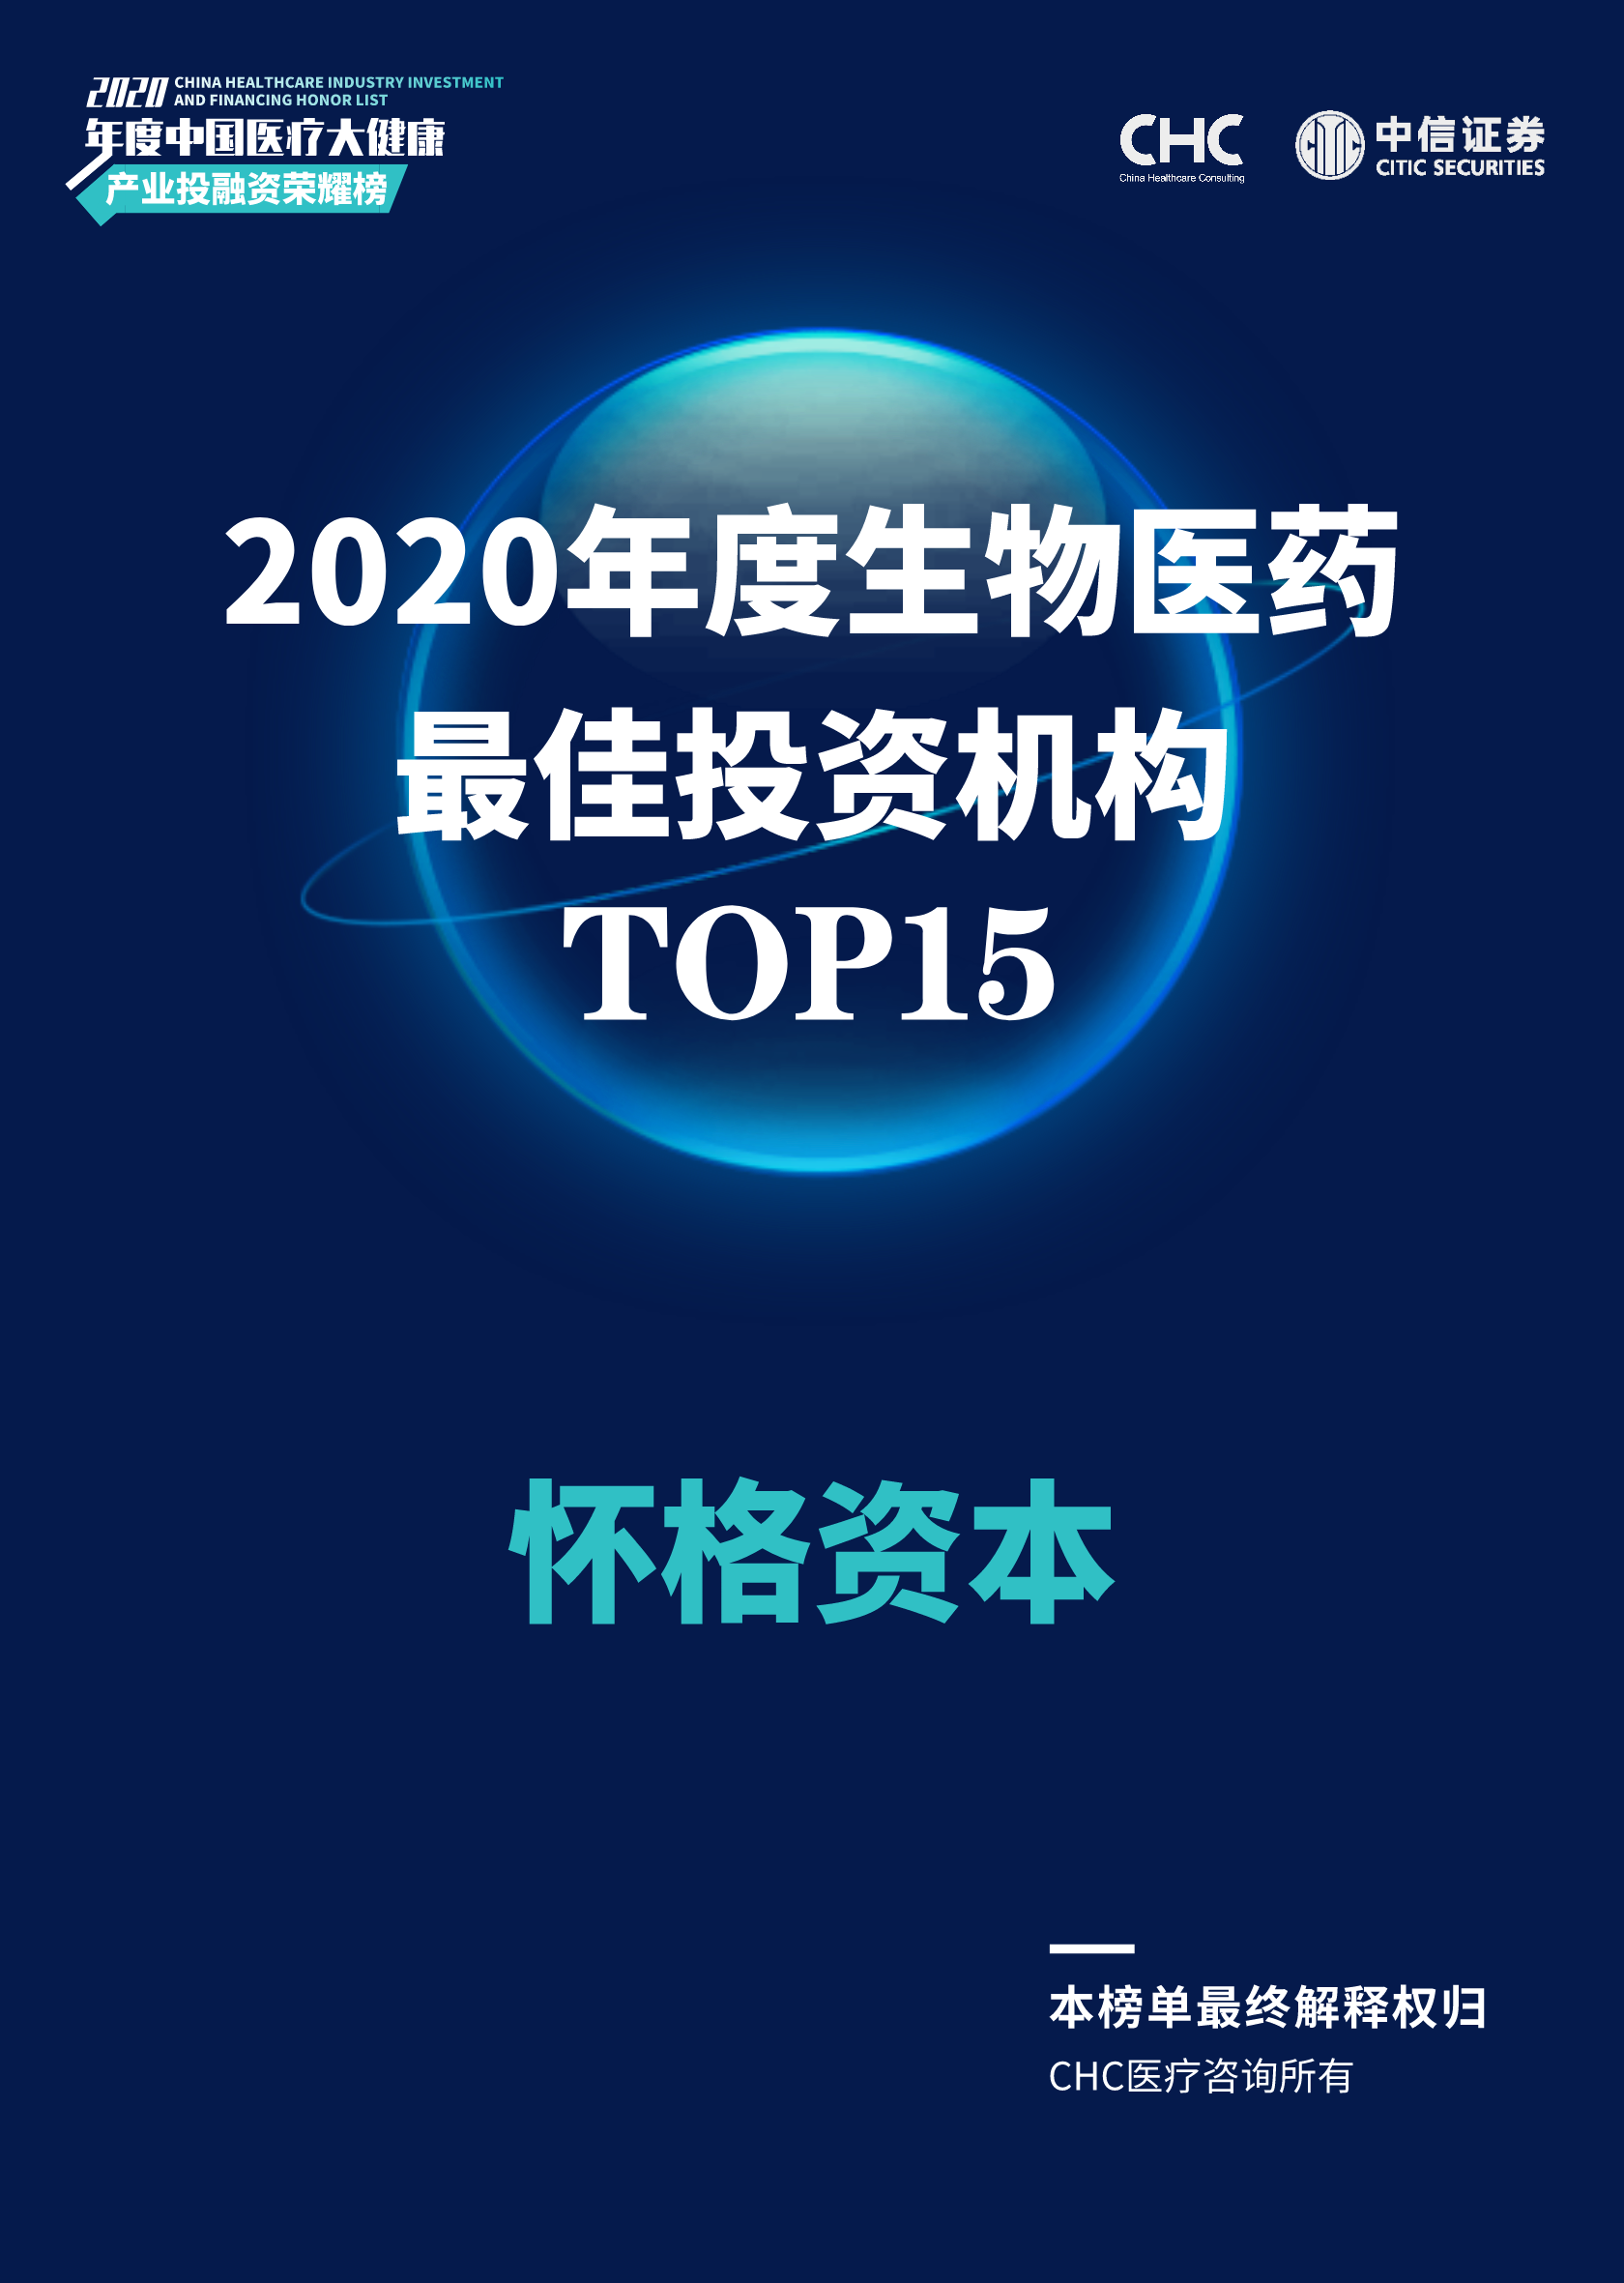 怀格荣誉|怀格资本荣获CHC·中信证券「2020年度生物医药最佳投资机构TOP 15」